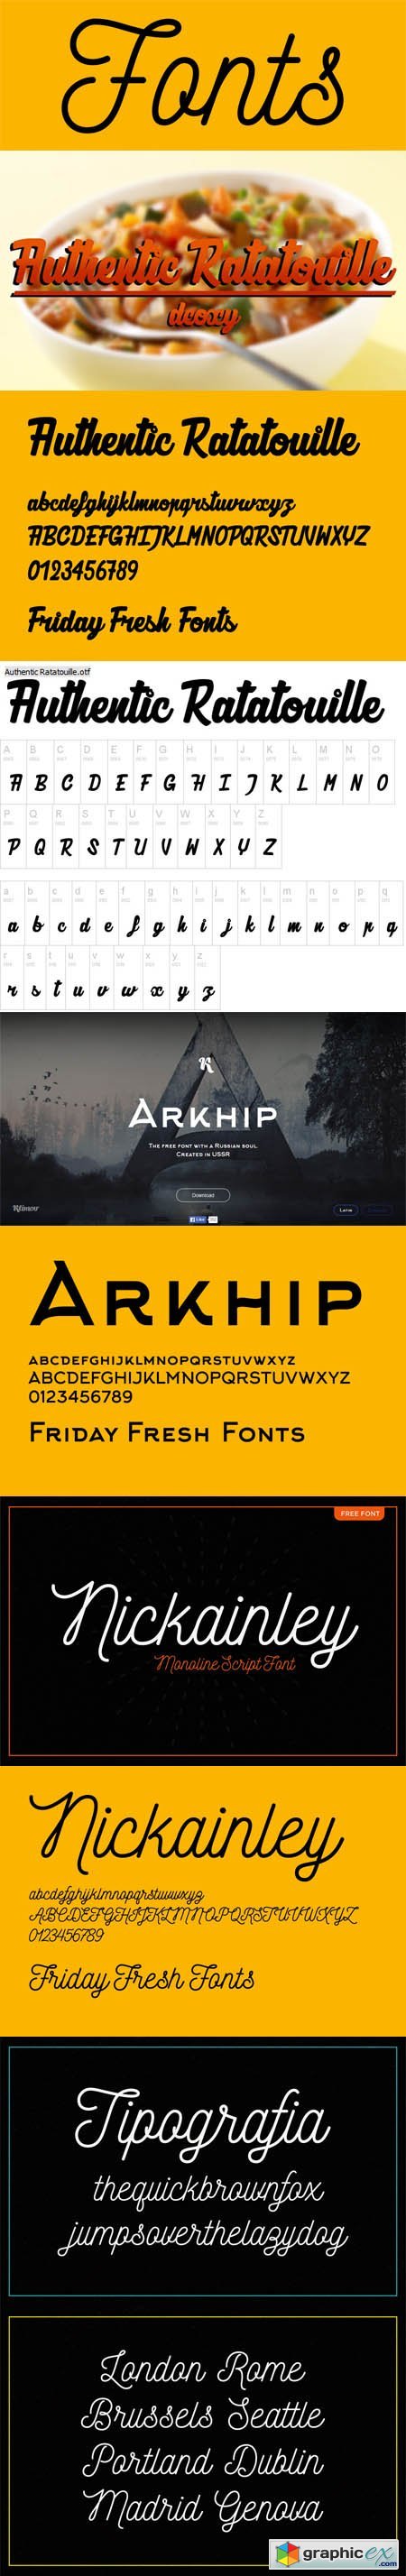 Friday Fresh Fonts - Authentic Ratatouille, Arkhip, Nickainley